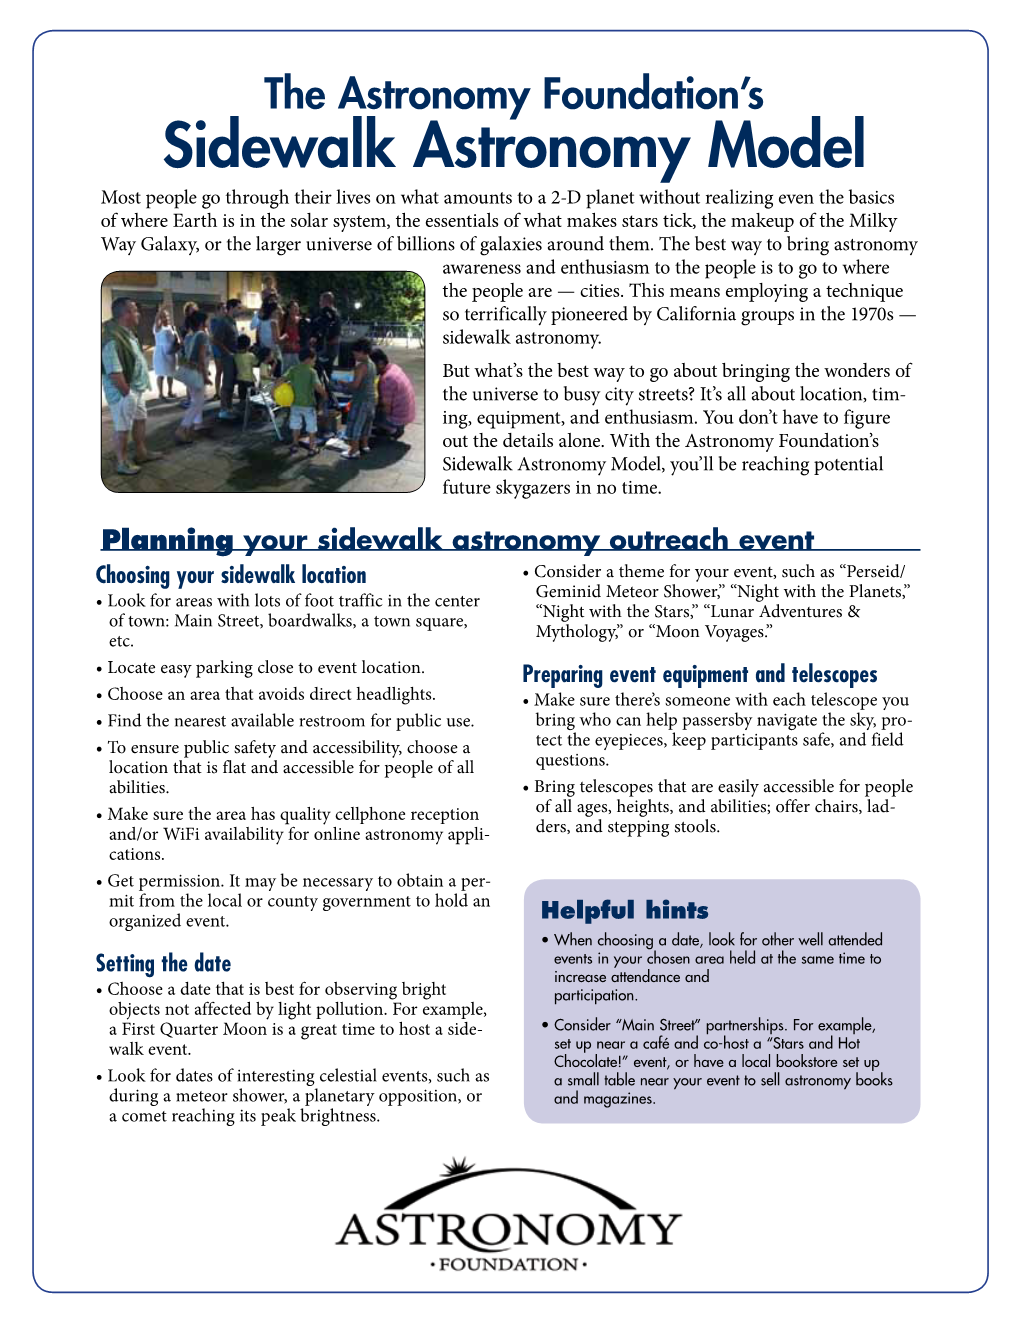 Sidewalk Astronomy Model